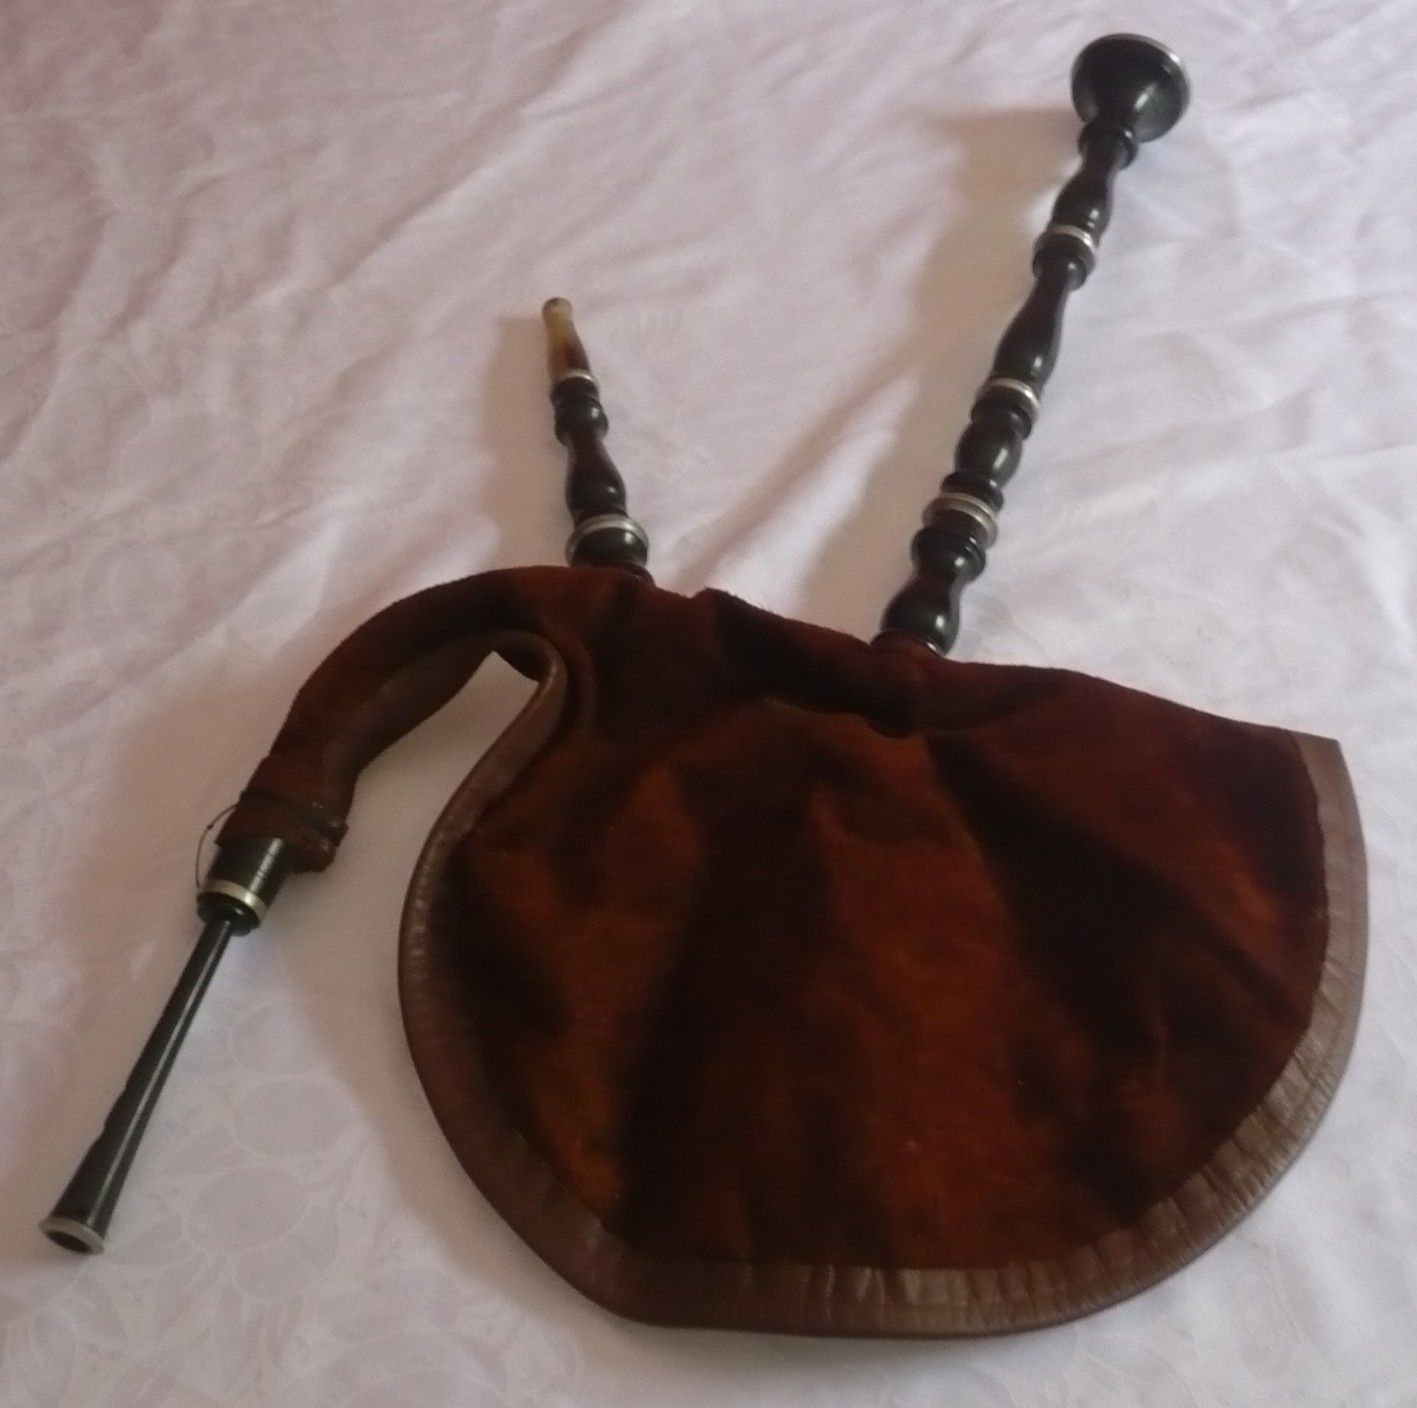 Les instruments de musique de la parade : le biniou kozh - Le blog de  quimper-collectionneurs.over-blog.com